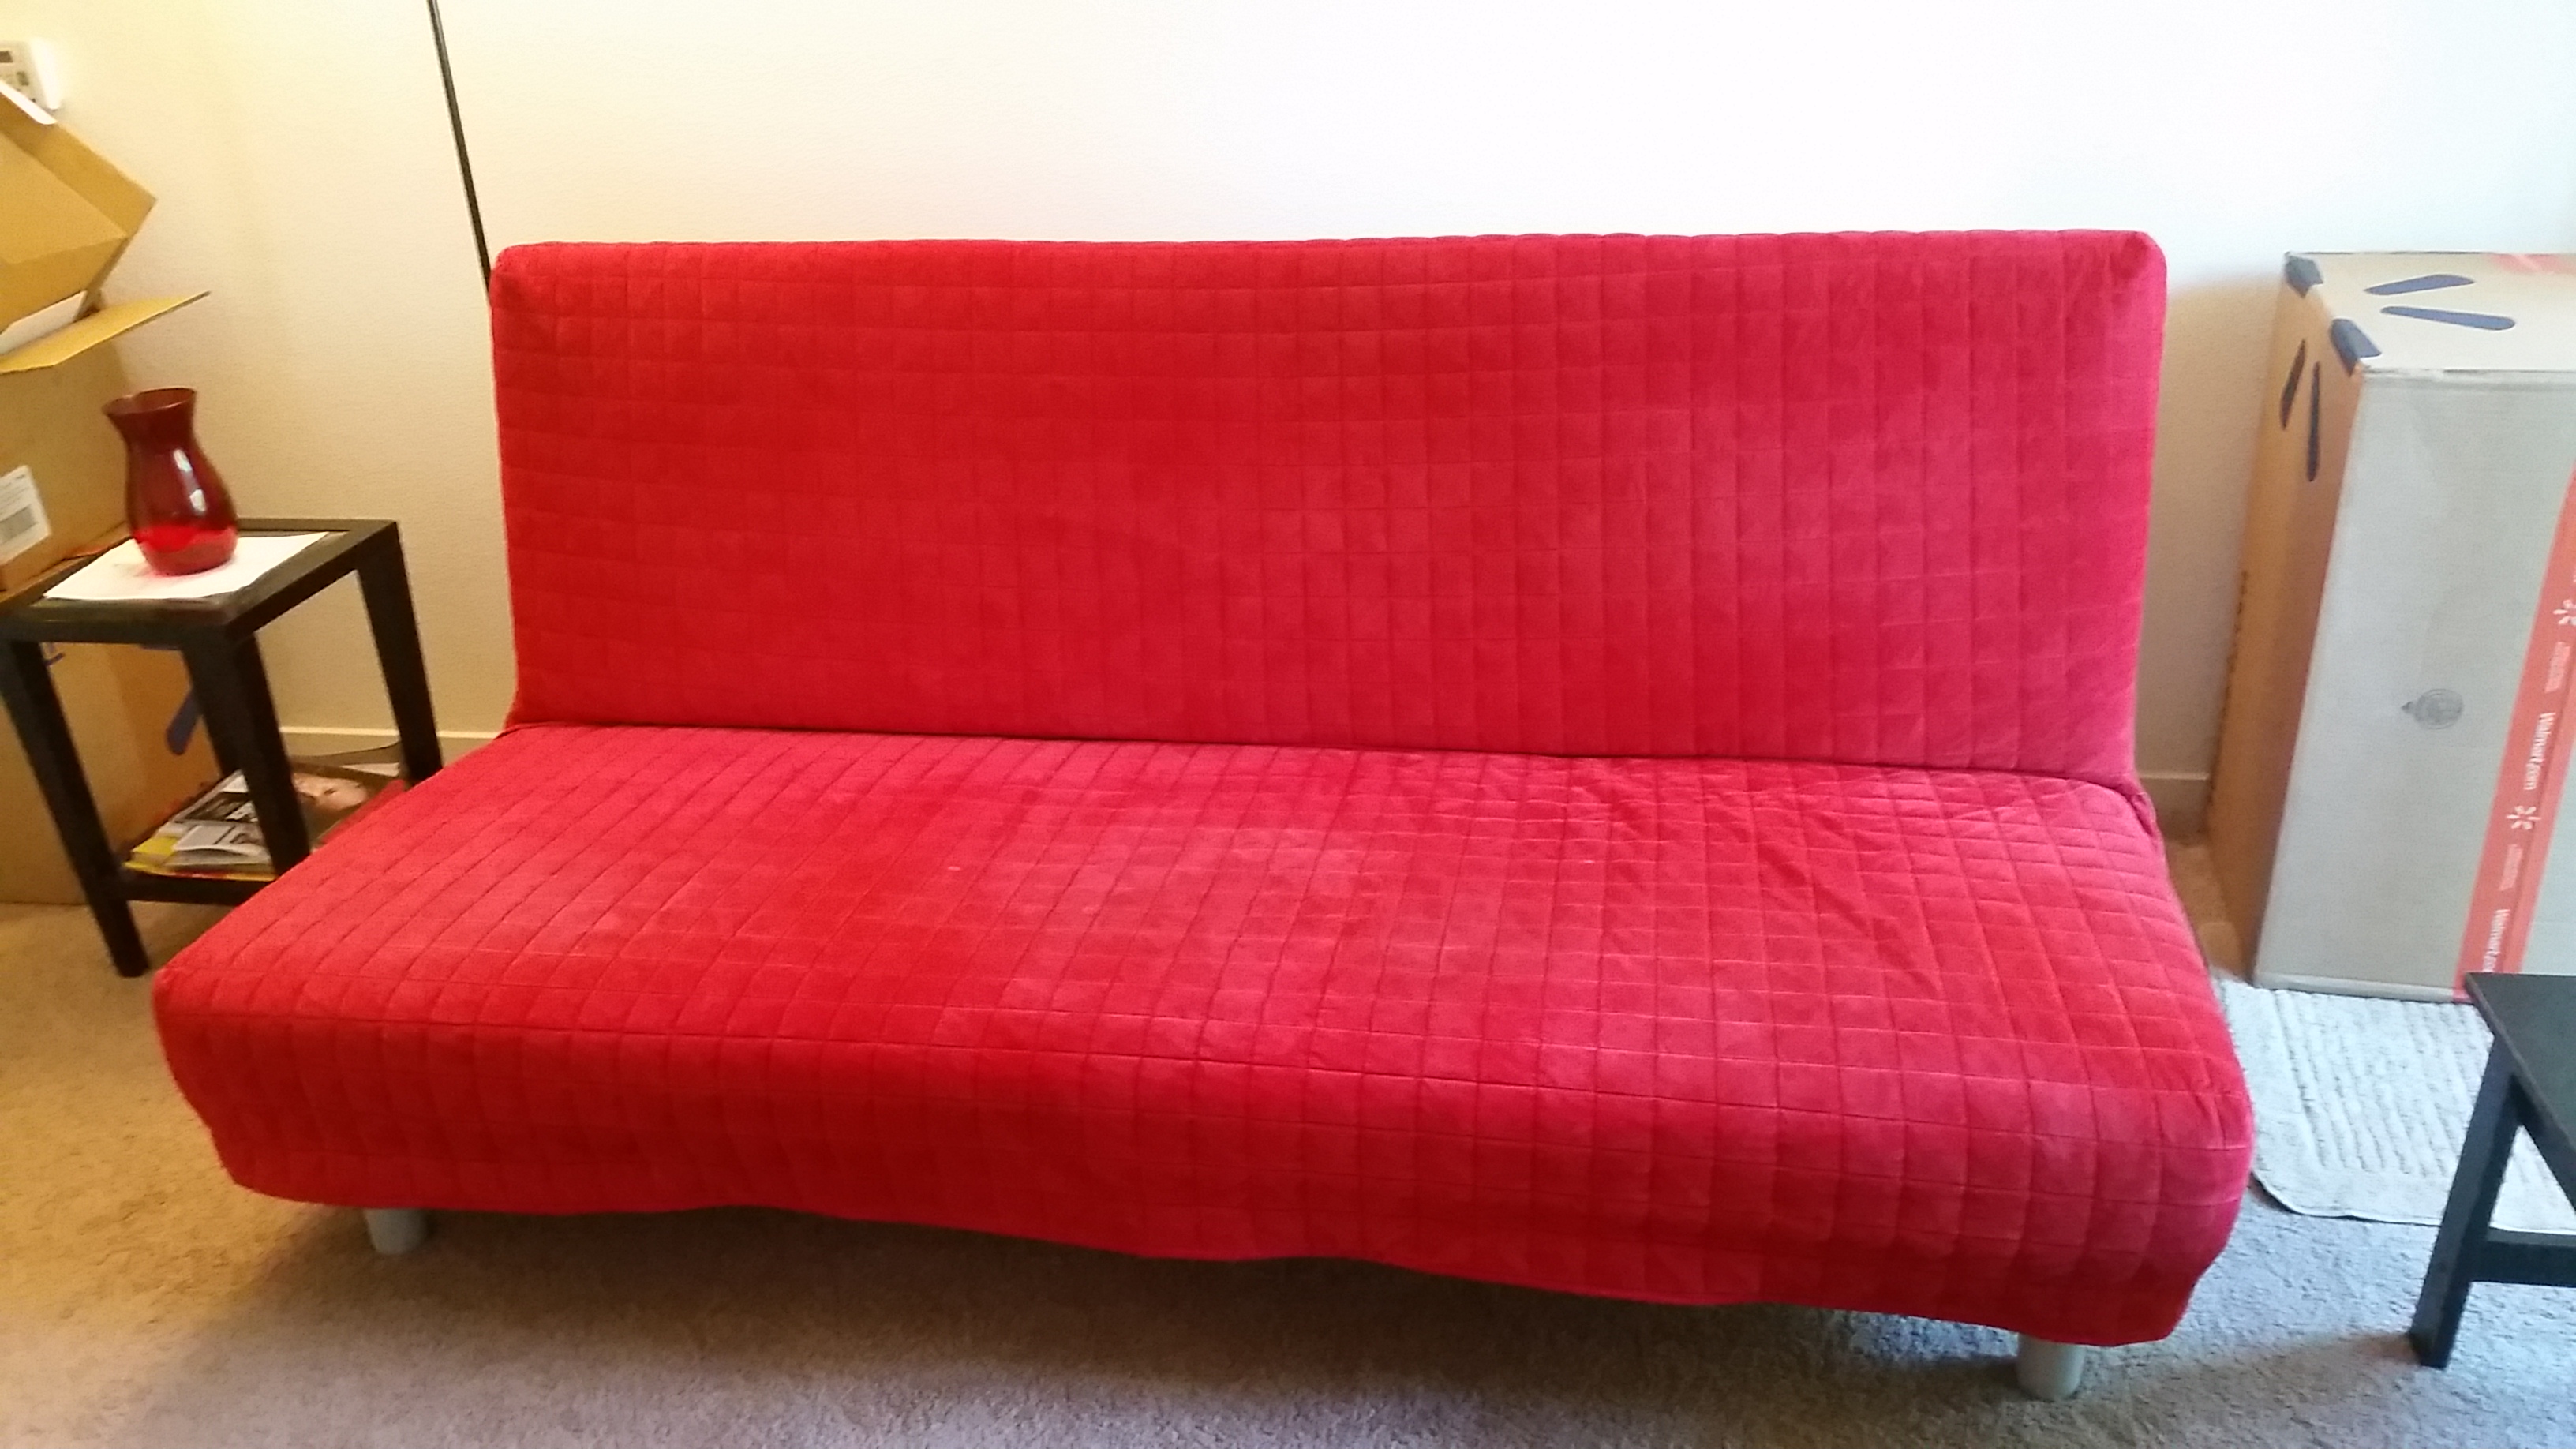 beddinge sofa bed frame